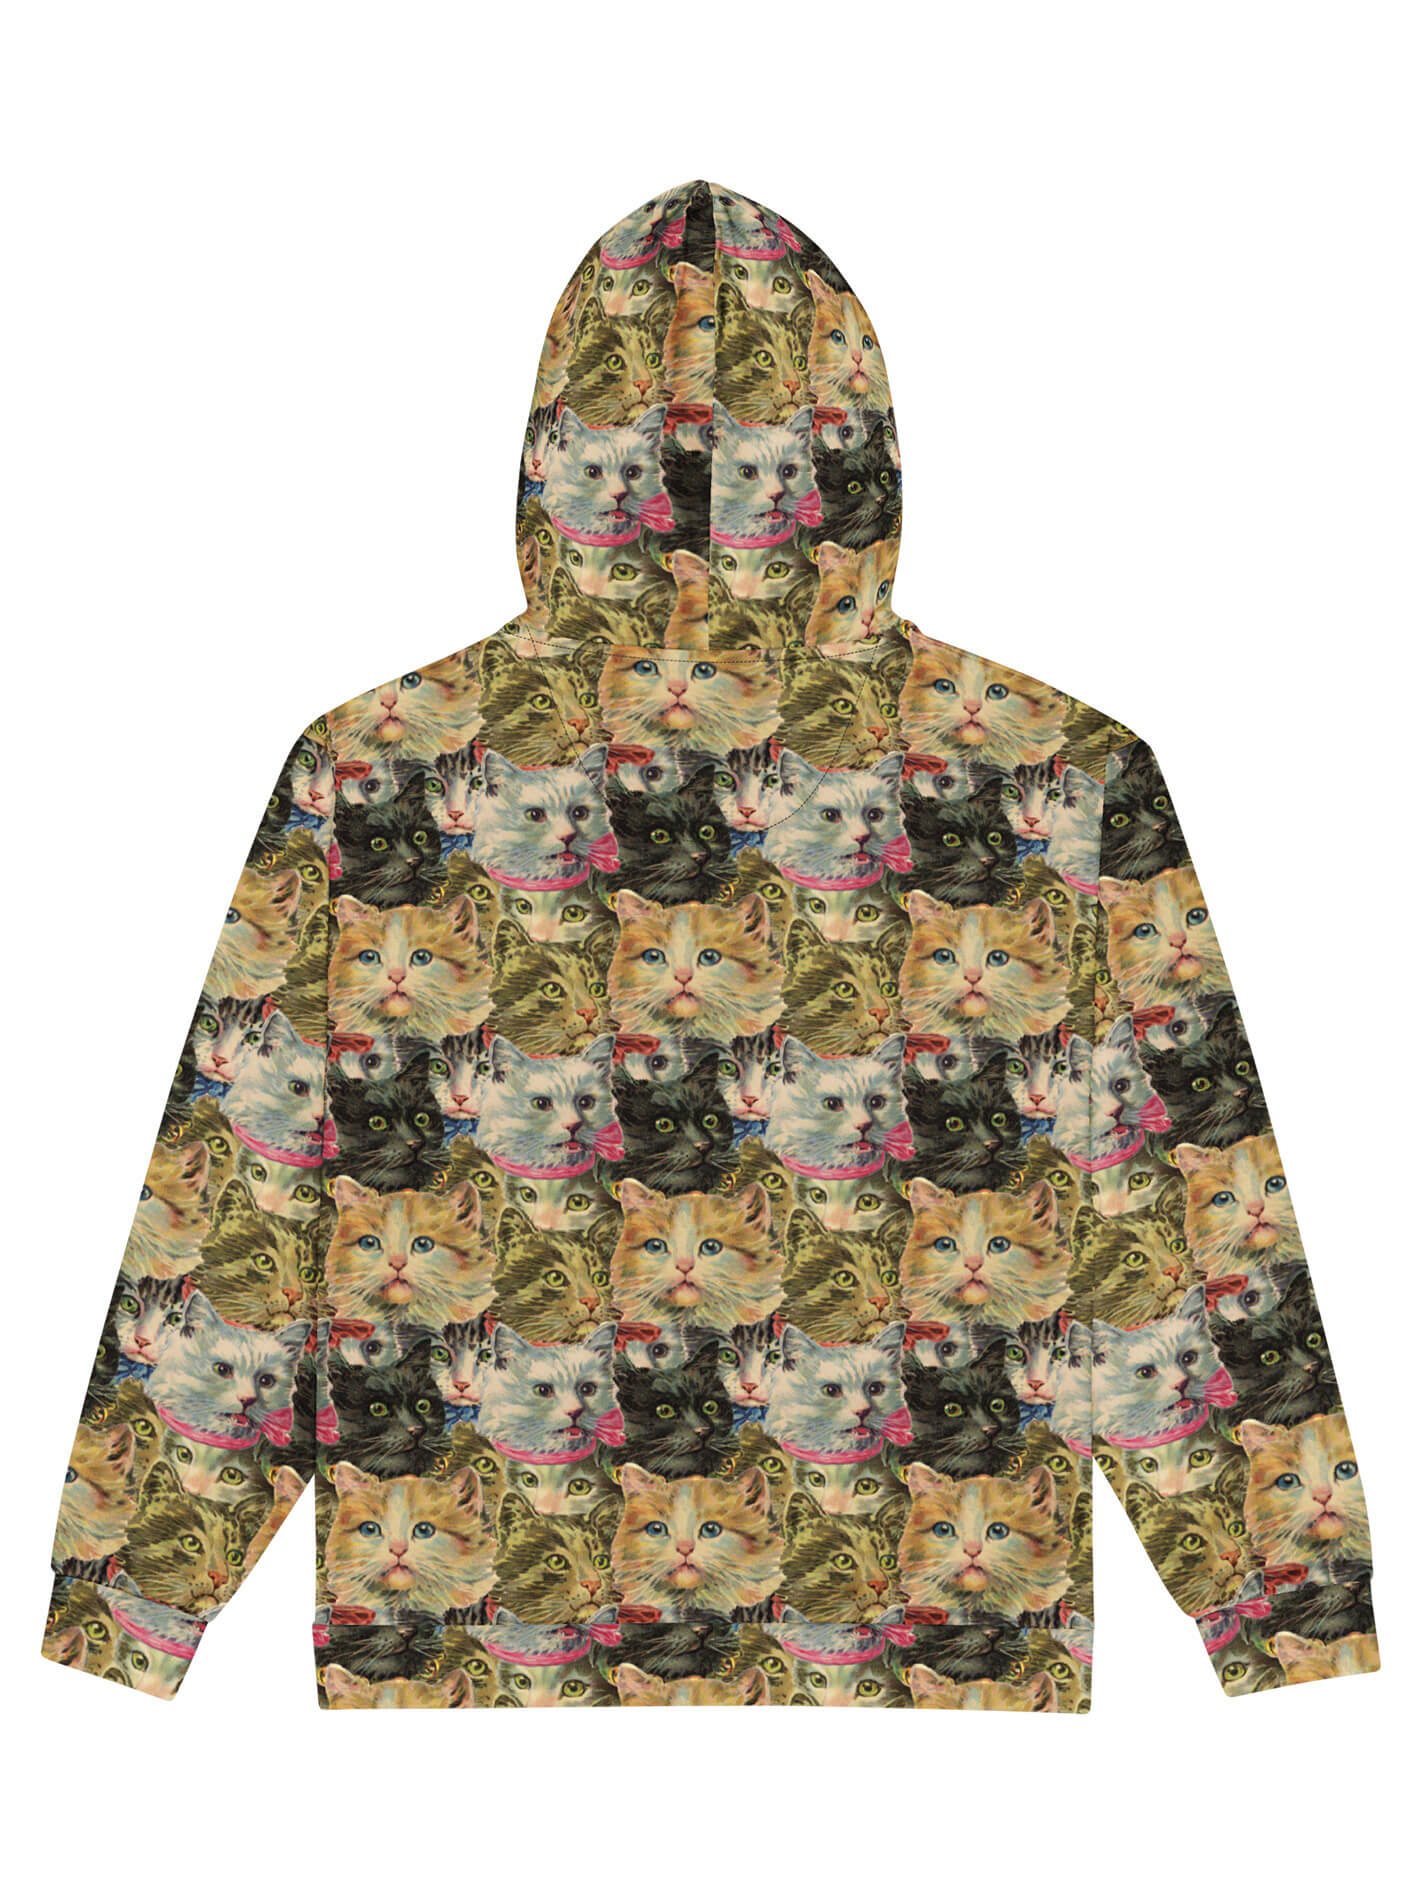 Retro kitty zip up hoodie.